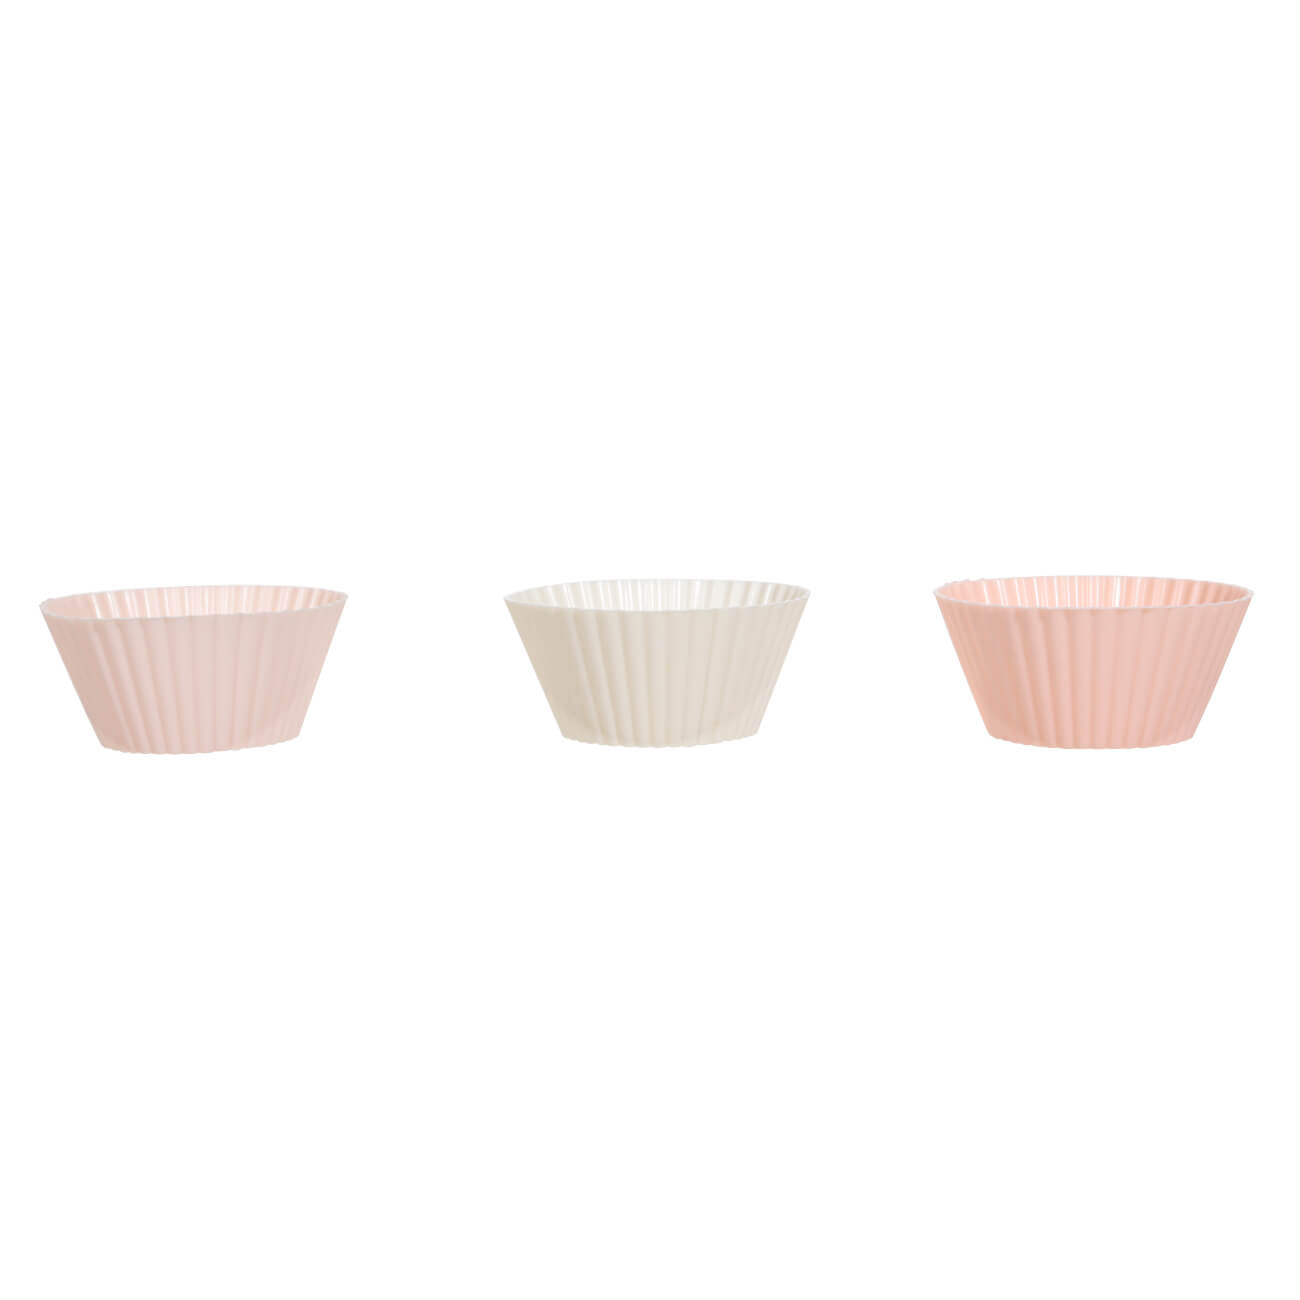 Форма для выпечки кексов, 7х3 см, 6 шт, силикон, бежевая/розовая/белая, Bakery форма для выпечки кексов berghoff